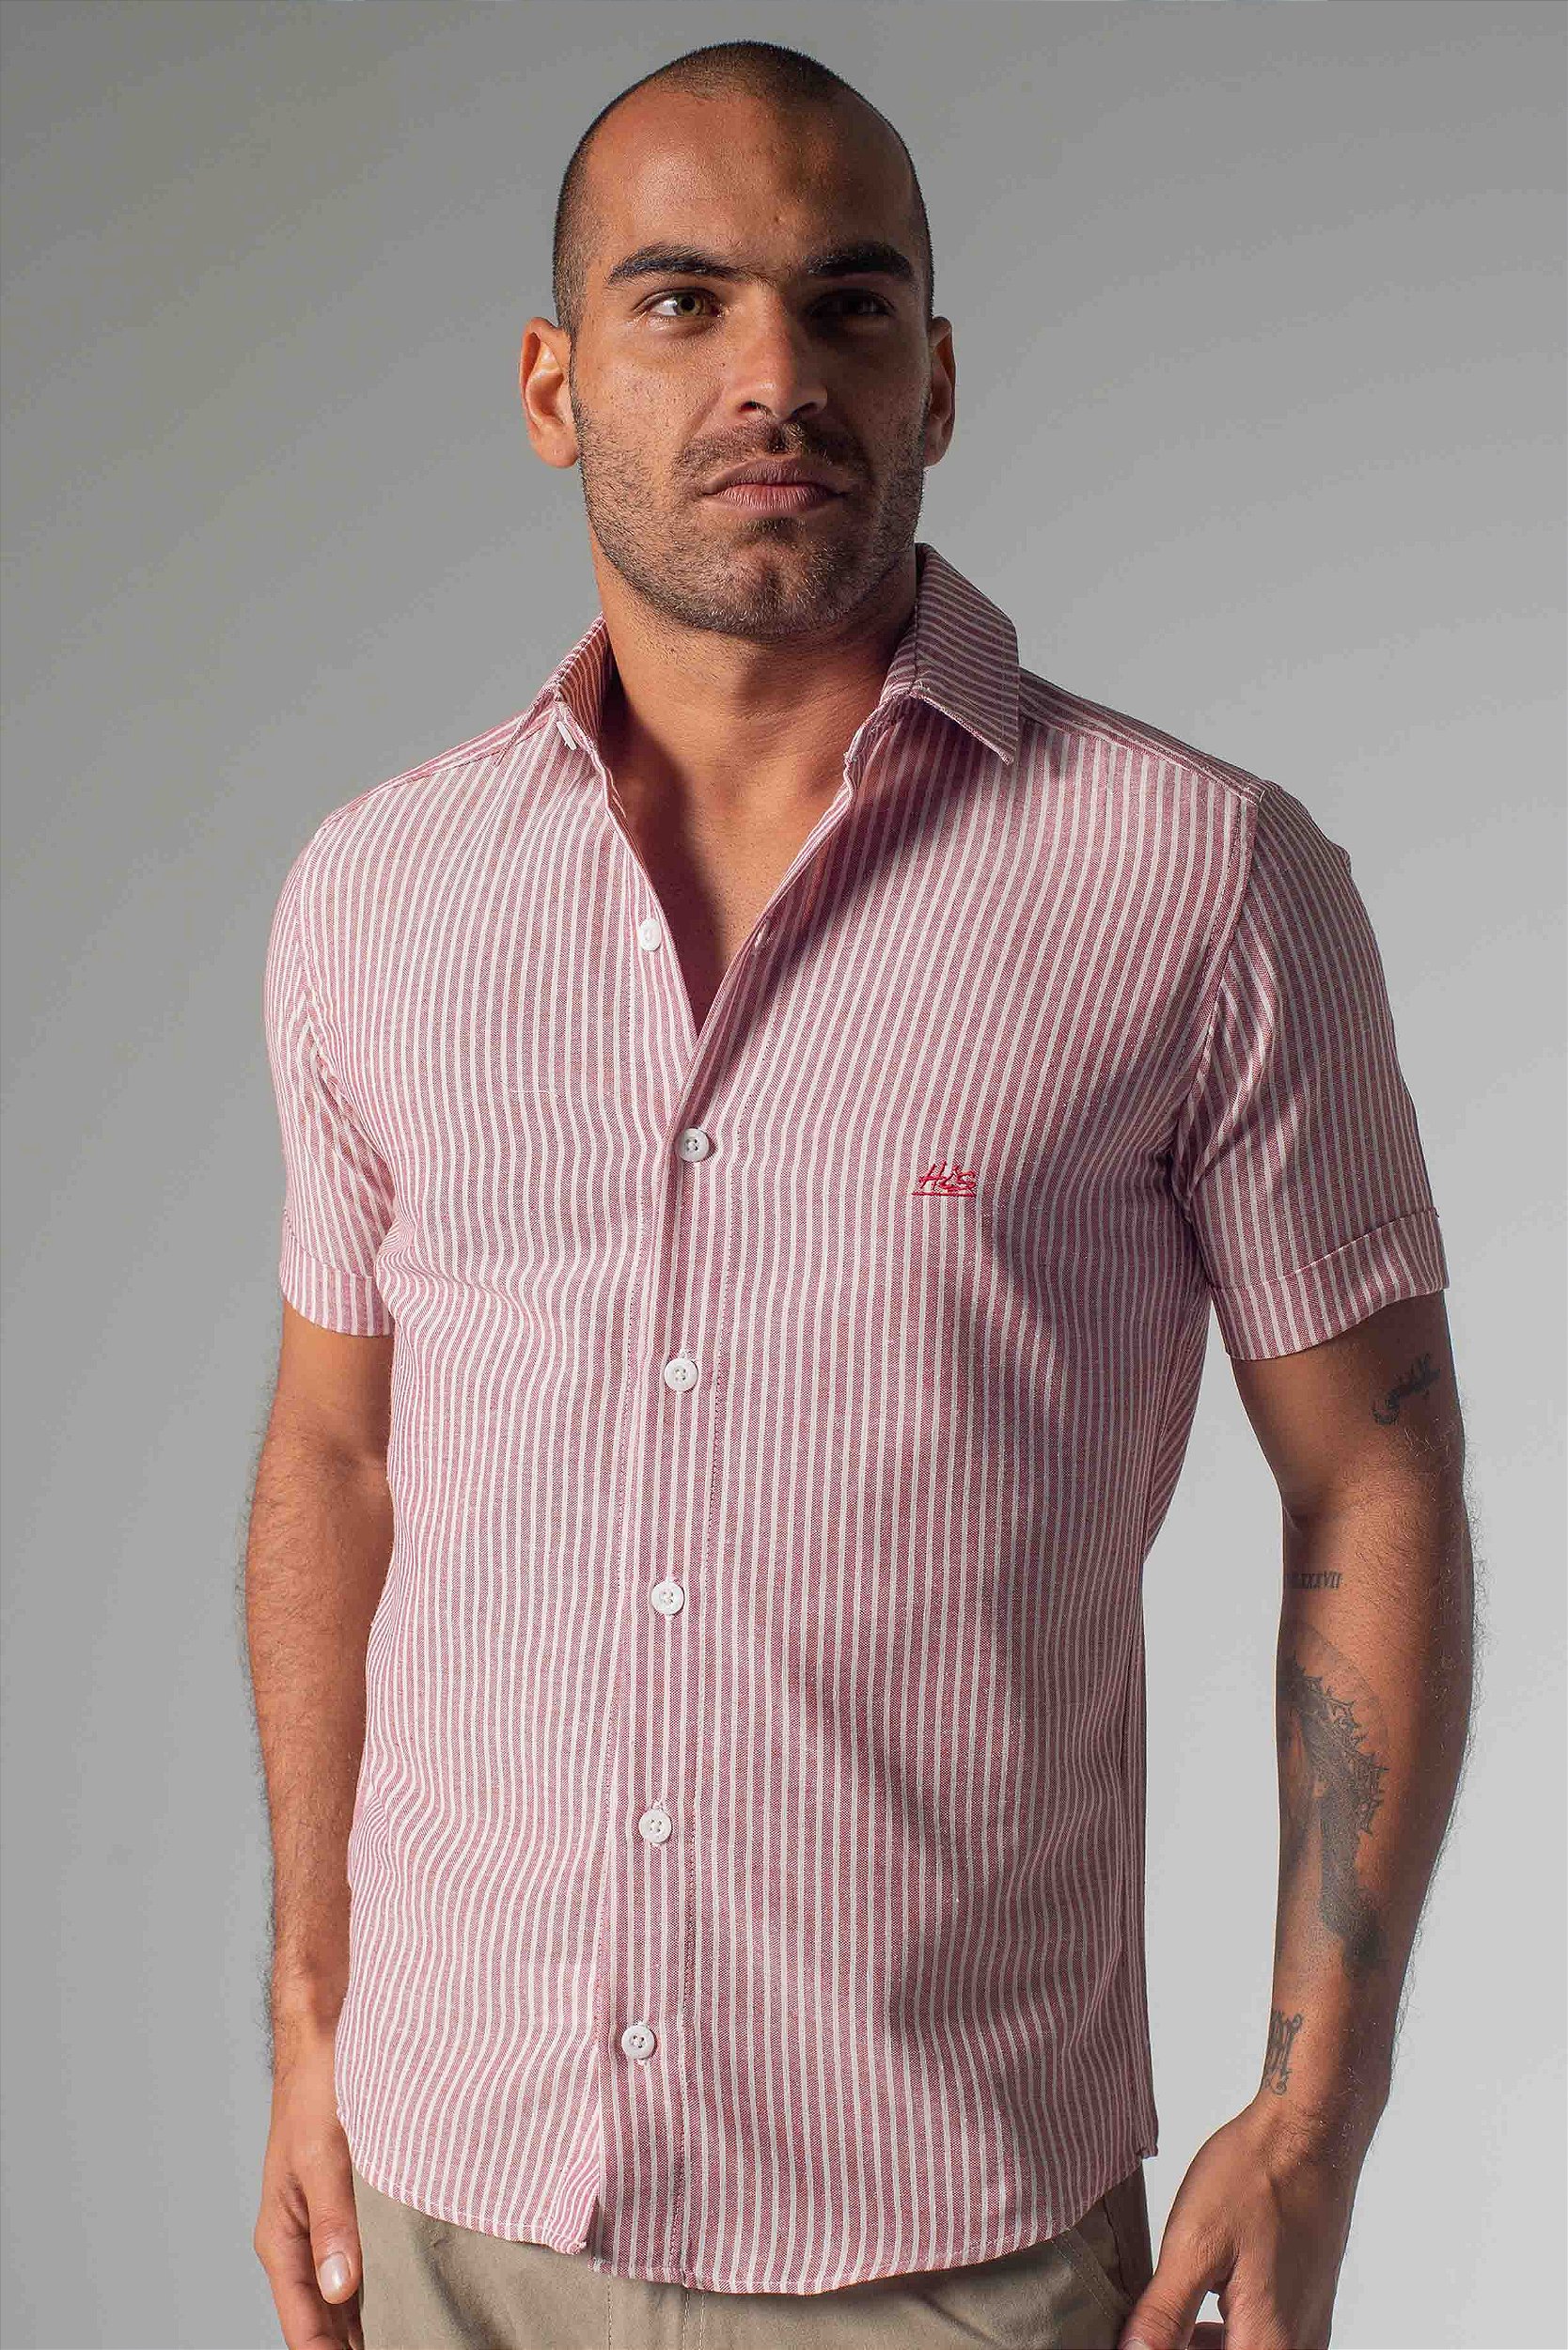 Camisa Listras Verticais - Loja His - Loja His - Moda Masculina: Camisas  Polo, Camisetas, Bermudas e Calças